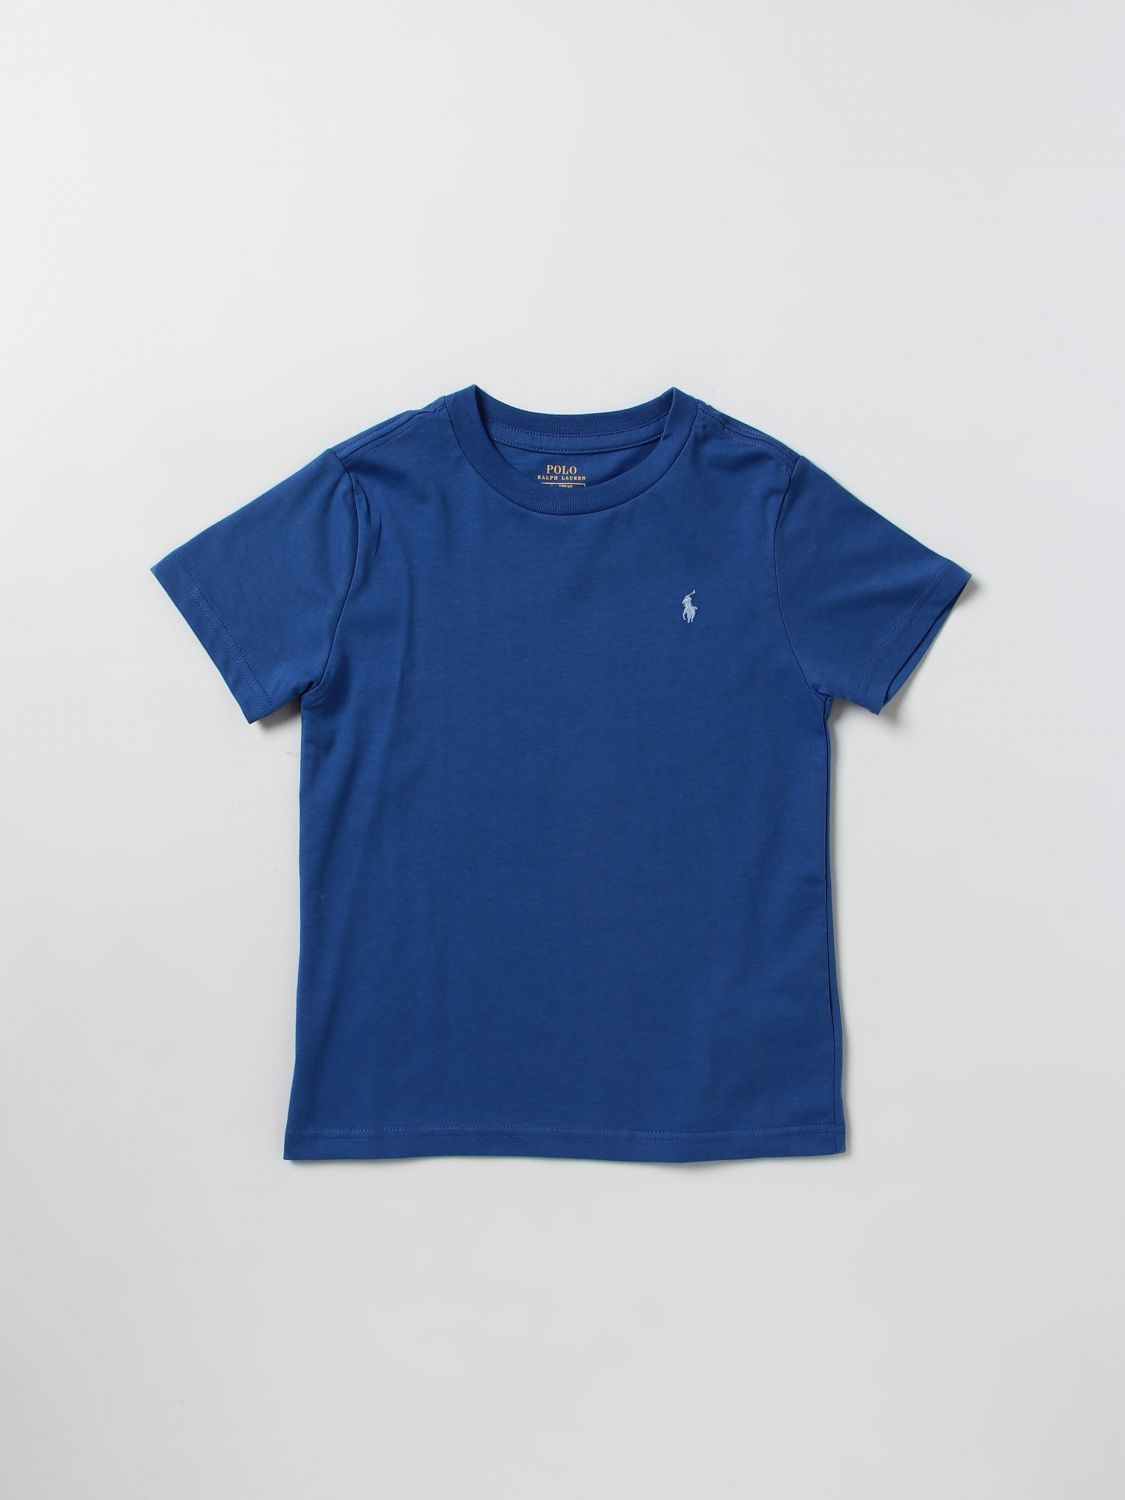 Polo Ralph Lauren Kids' Cotton T-shirt In Blue